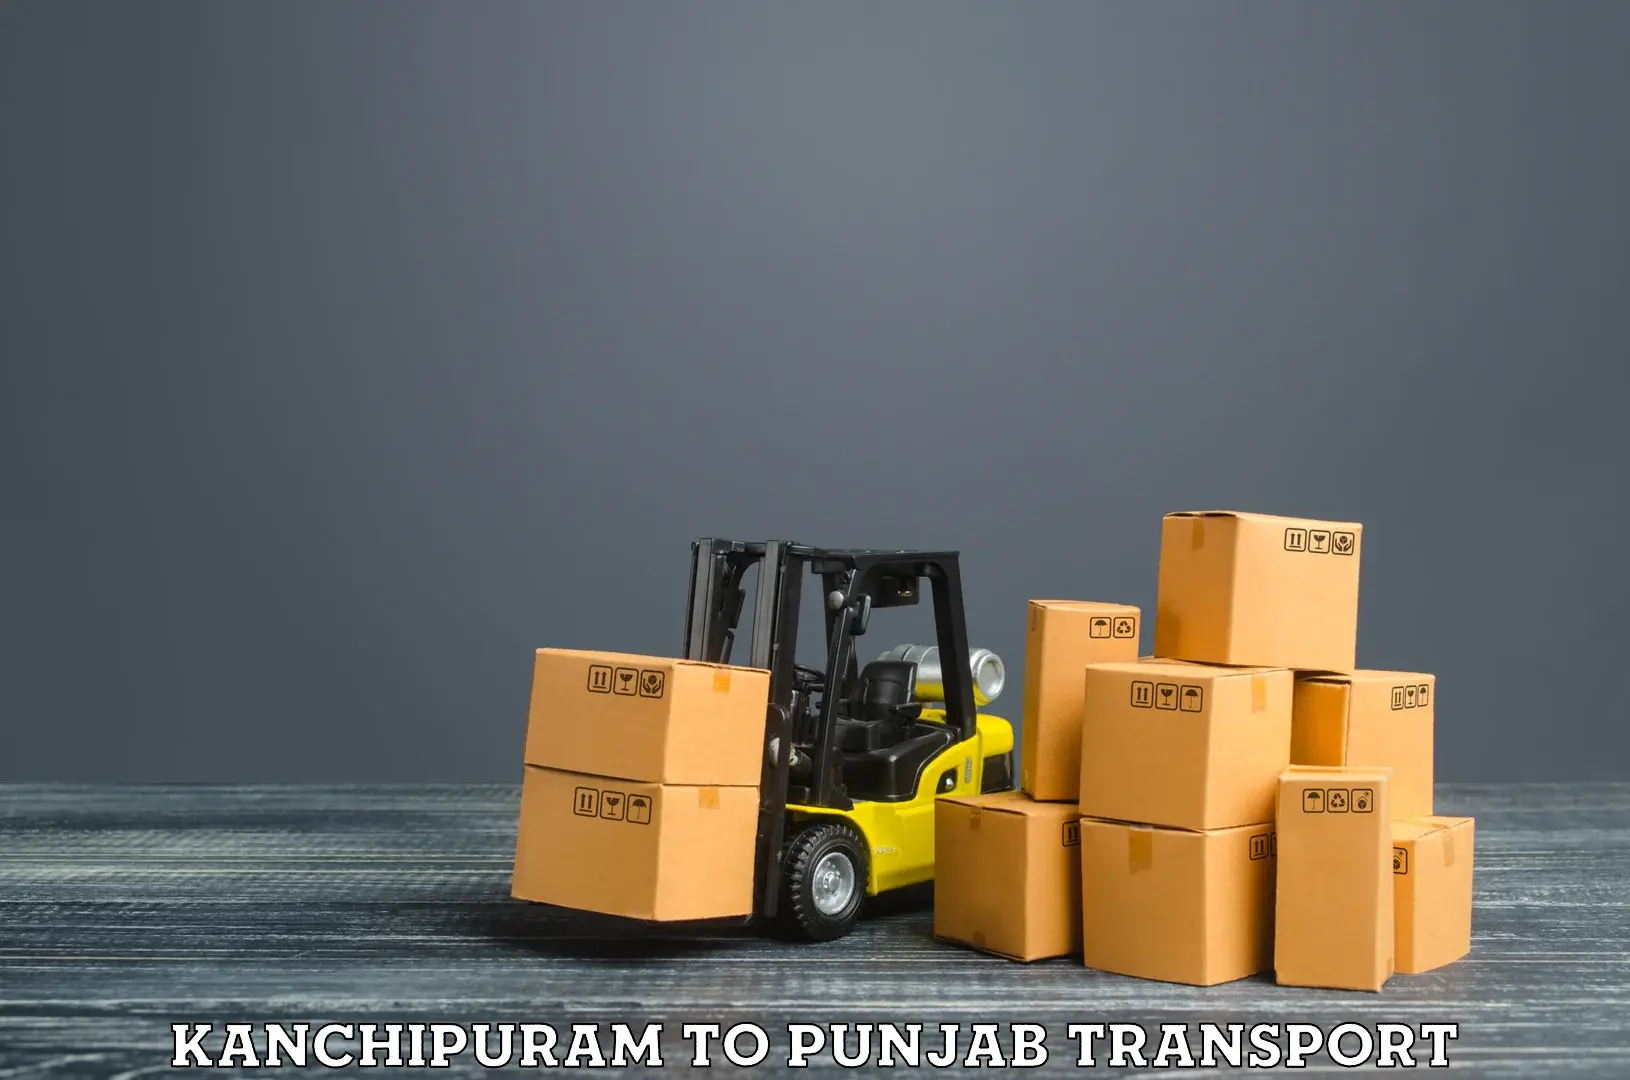 Express transport services Kanchipuram to Punjab